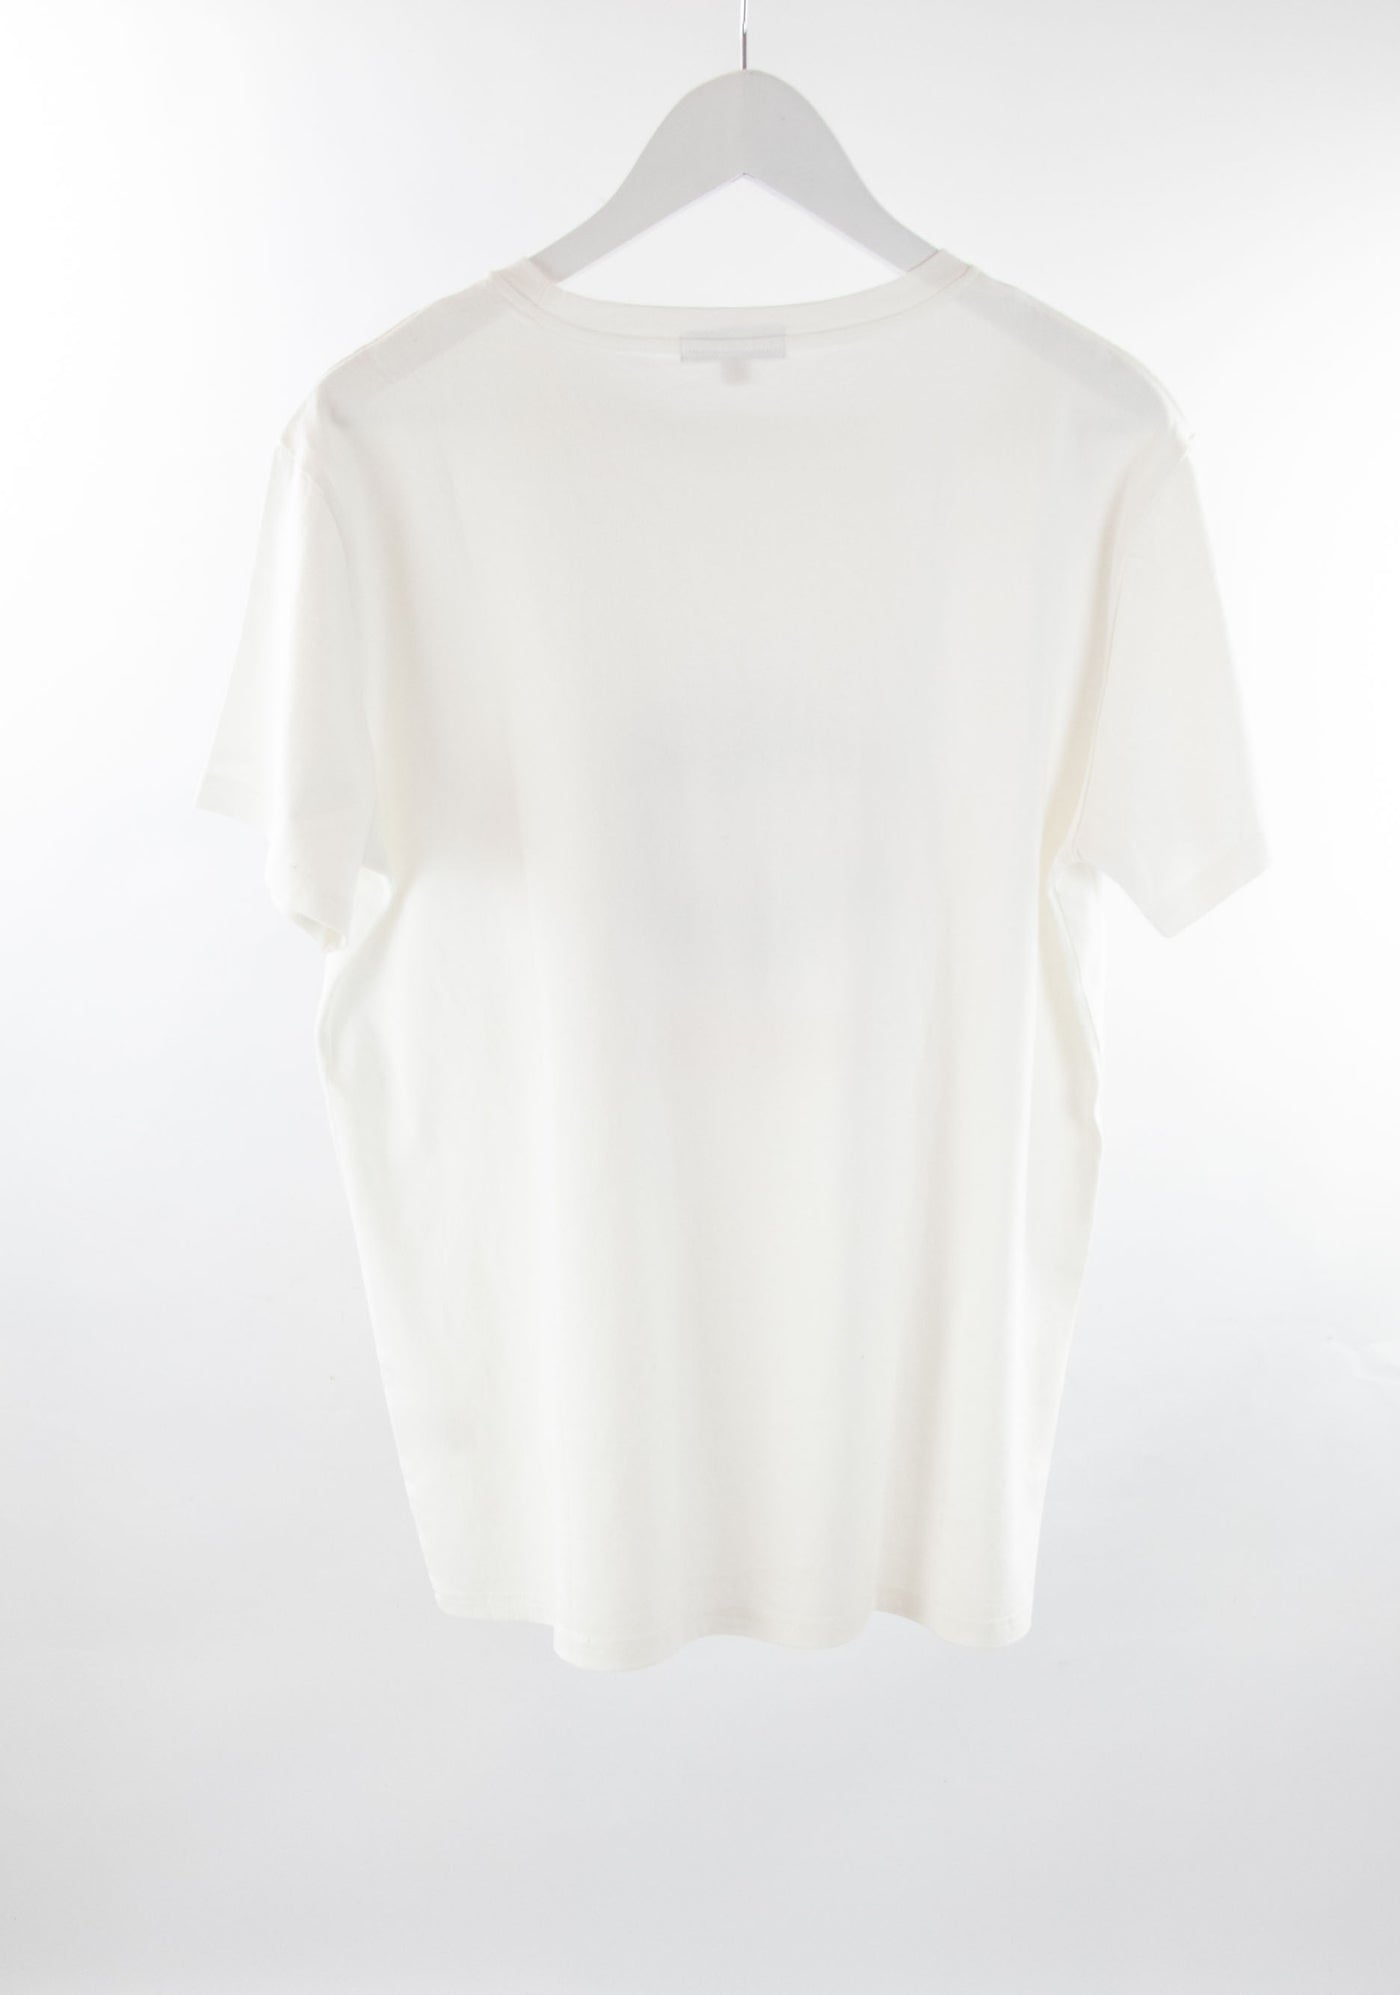 Camiseta blanca VRG GRL